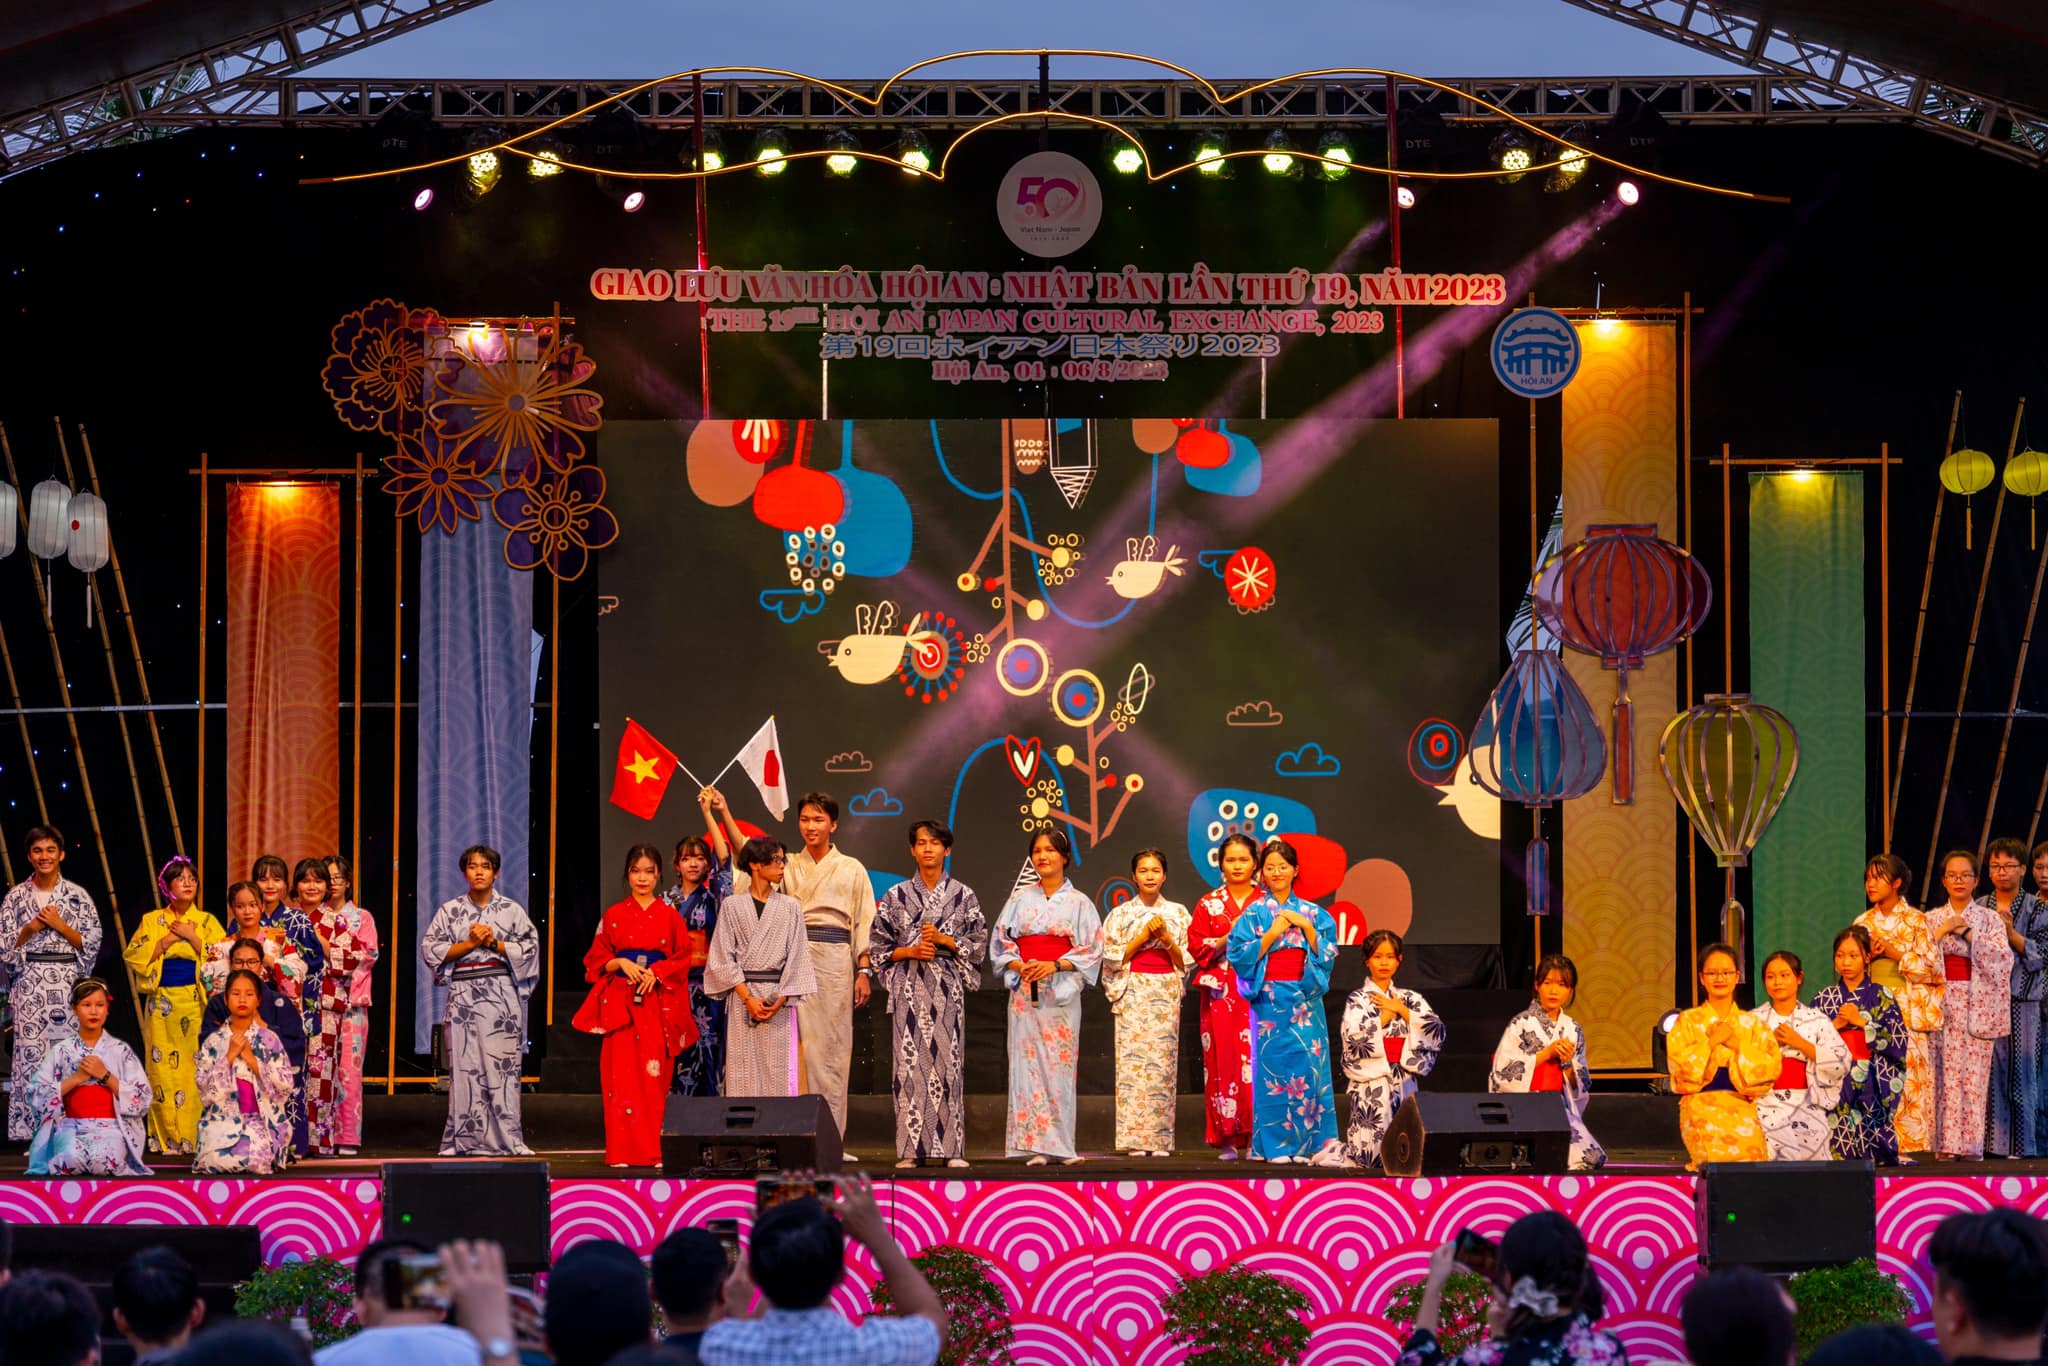 Khai mạc sự kiện “Giao lưu Văn hóa Hội An - Nhật Bản” lần thứ 19 - 7